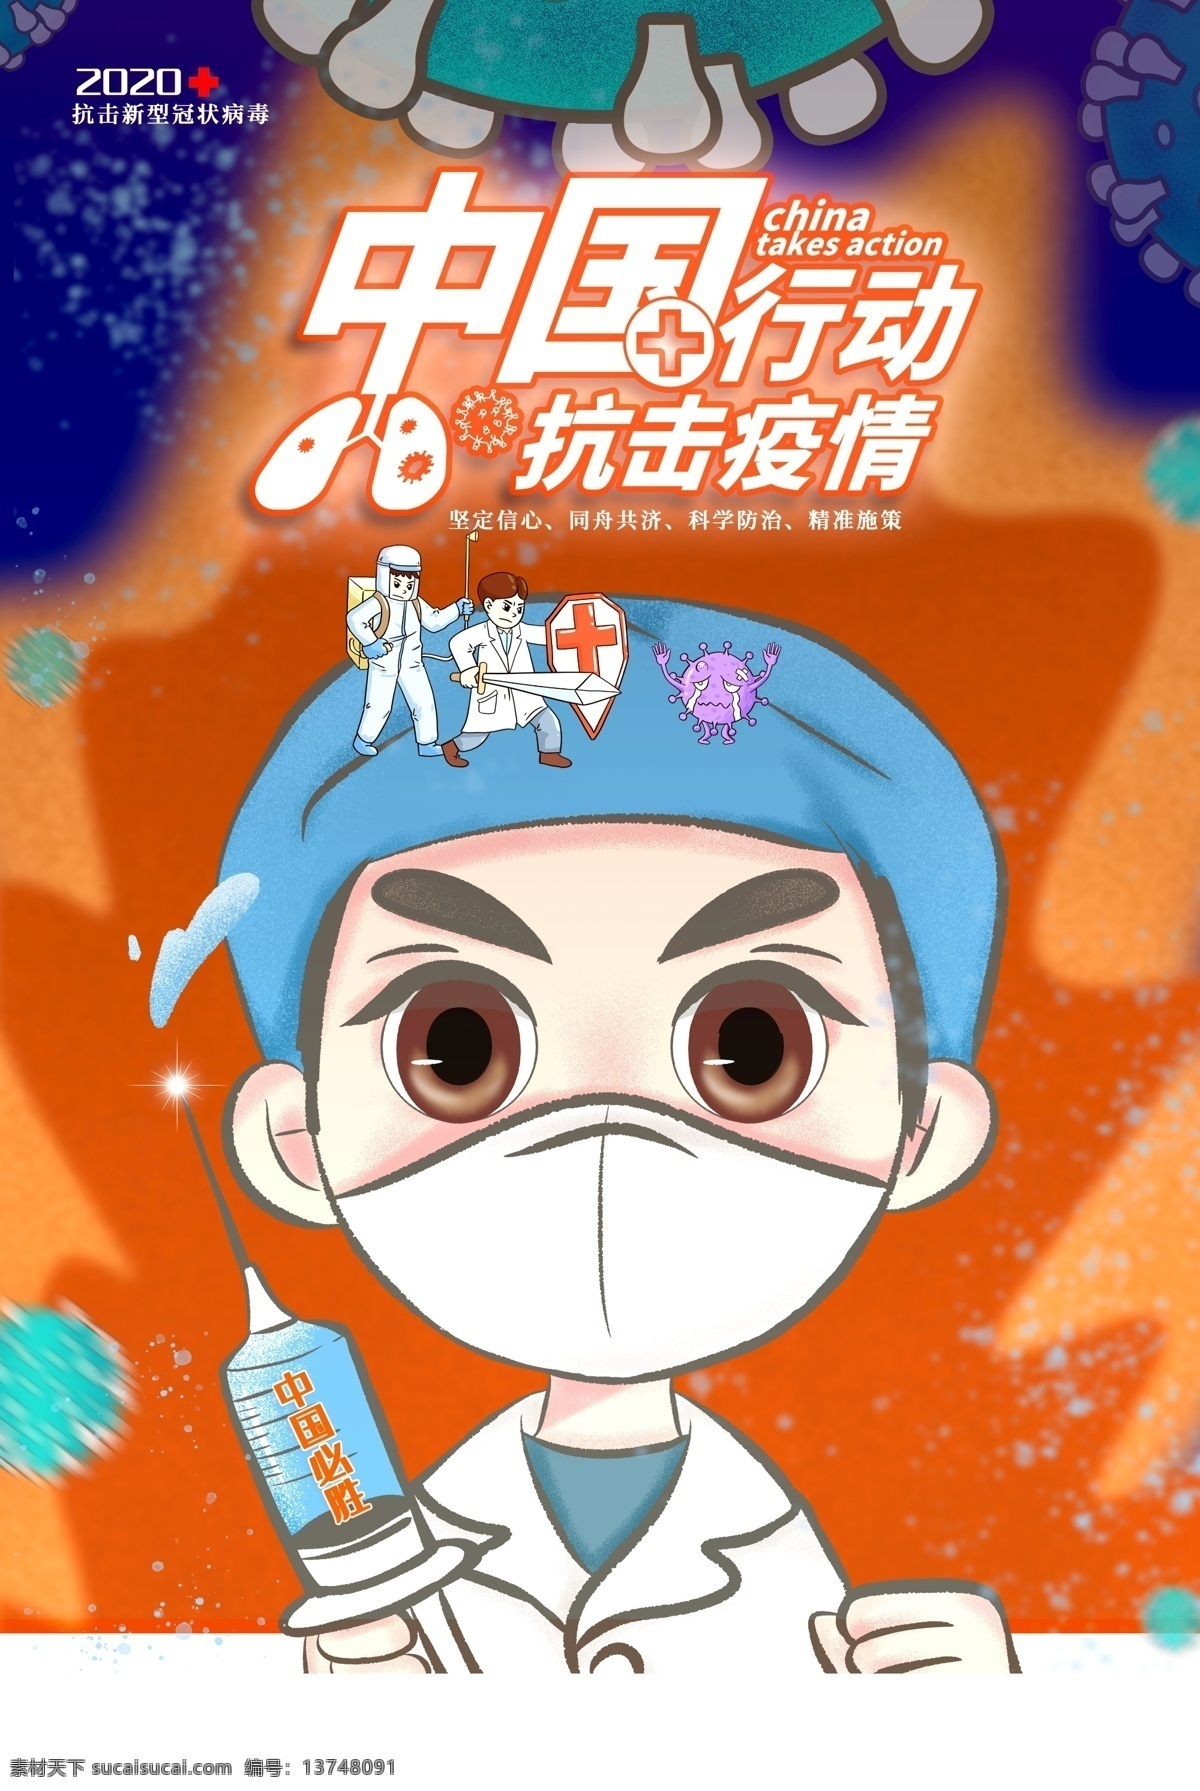 中国 行动 抗击 疫情 中国行动 抗击疫情 海报 展板 艺术字